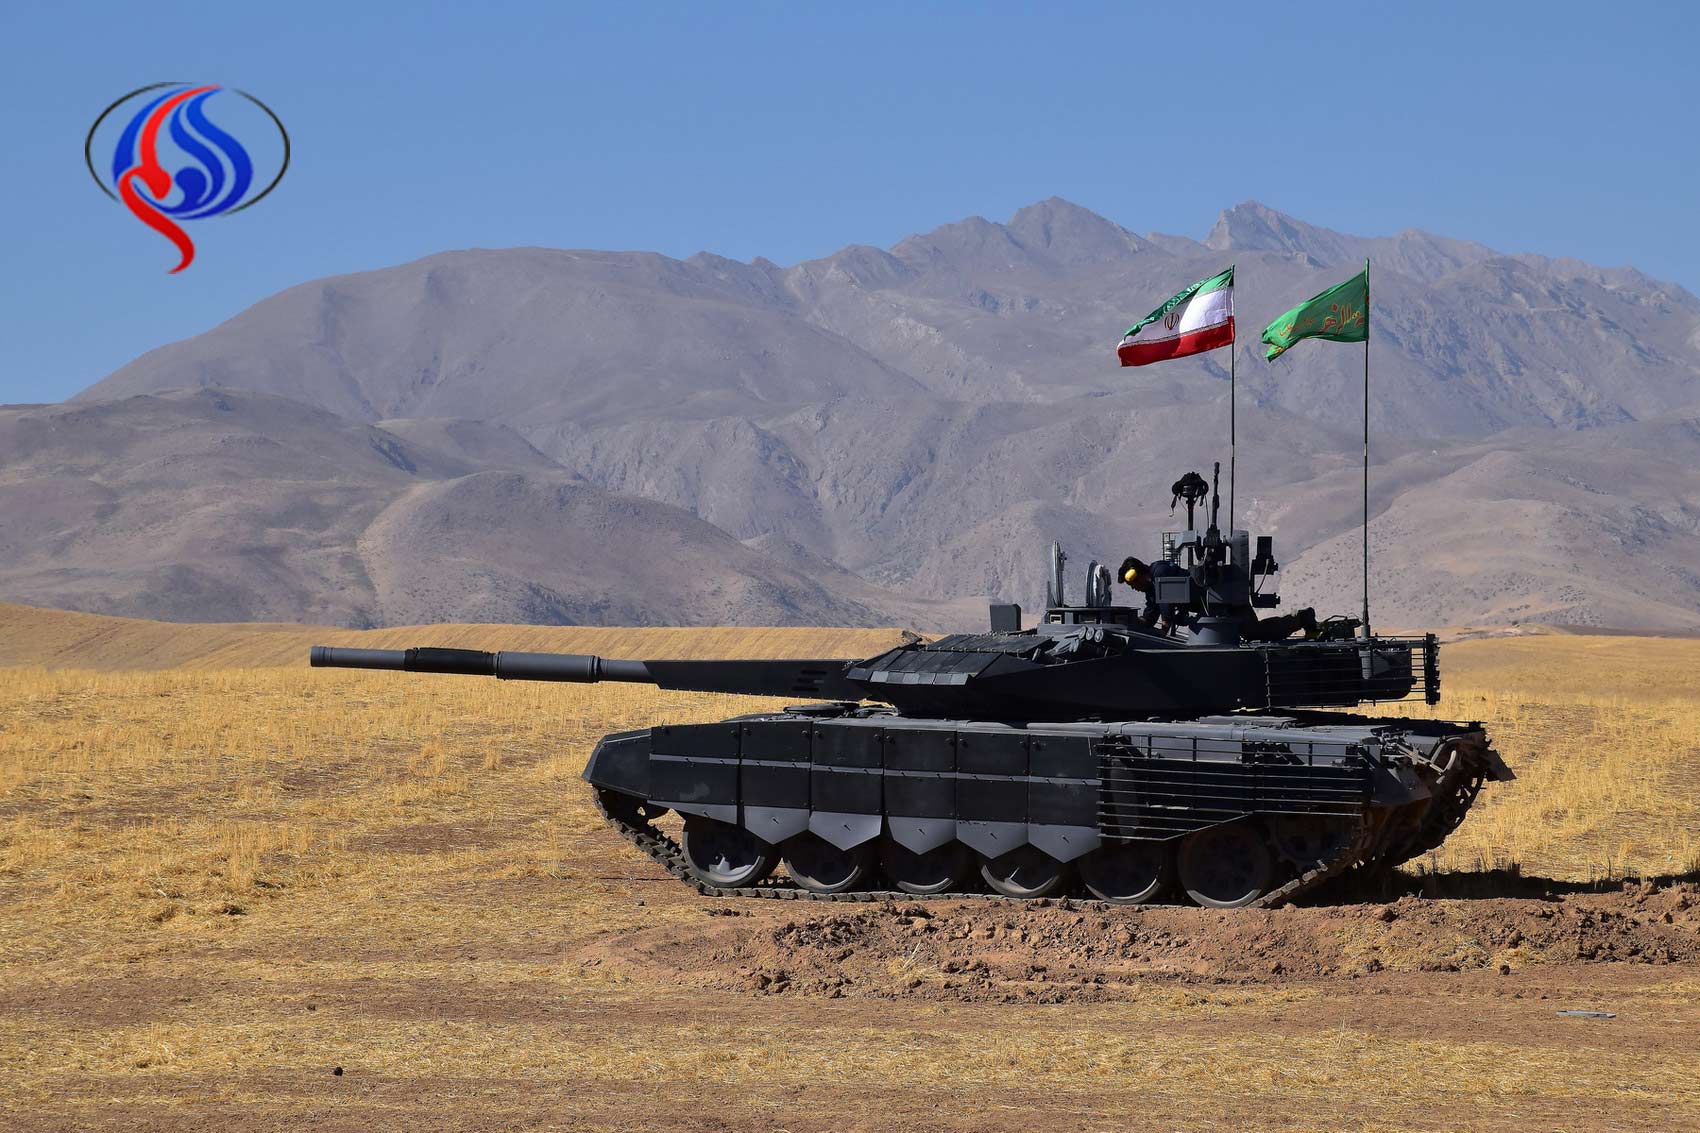 شاهد بالفيديو : أول دبابة برمائية إيرانية بخاصية الليزر والتحكم عن بعد!